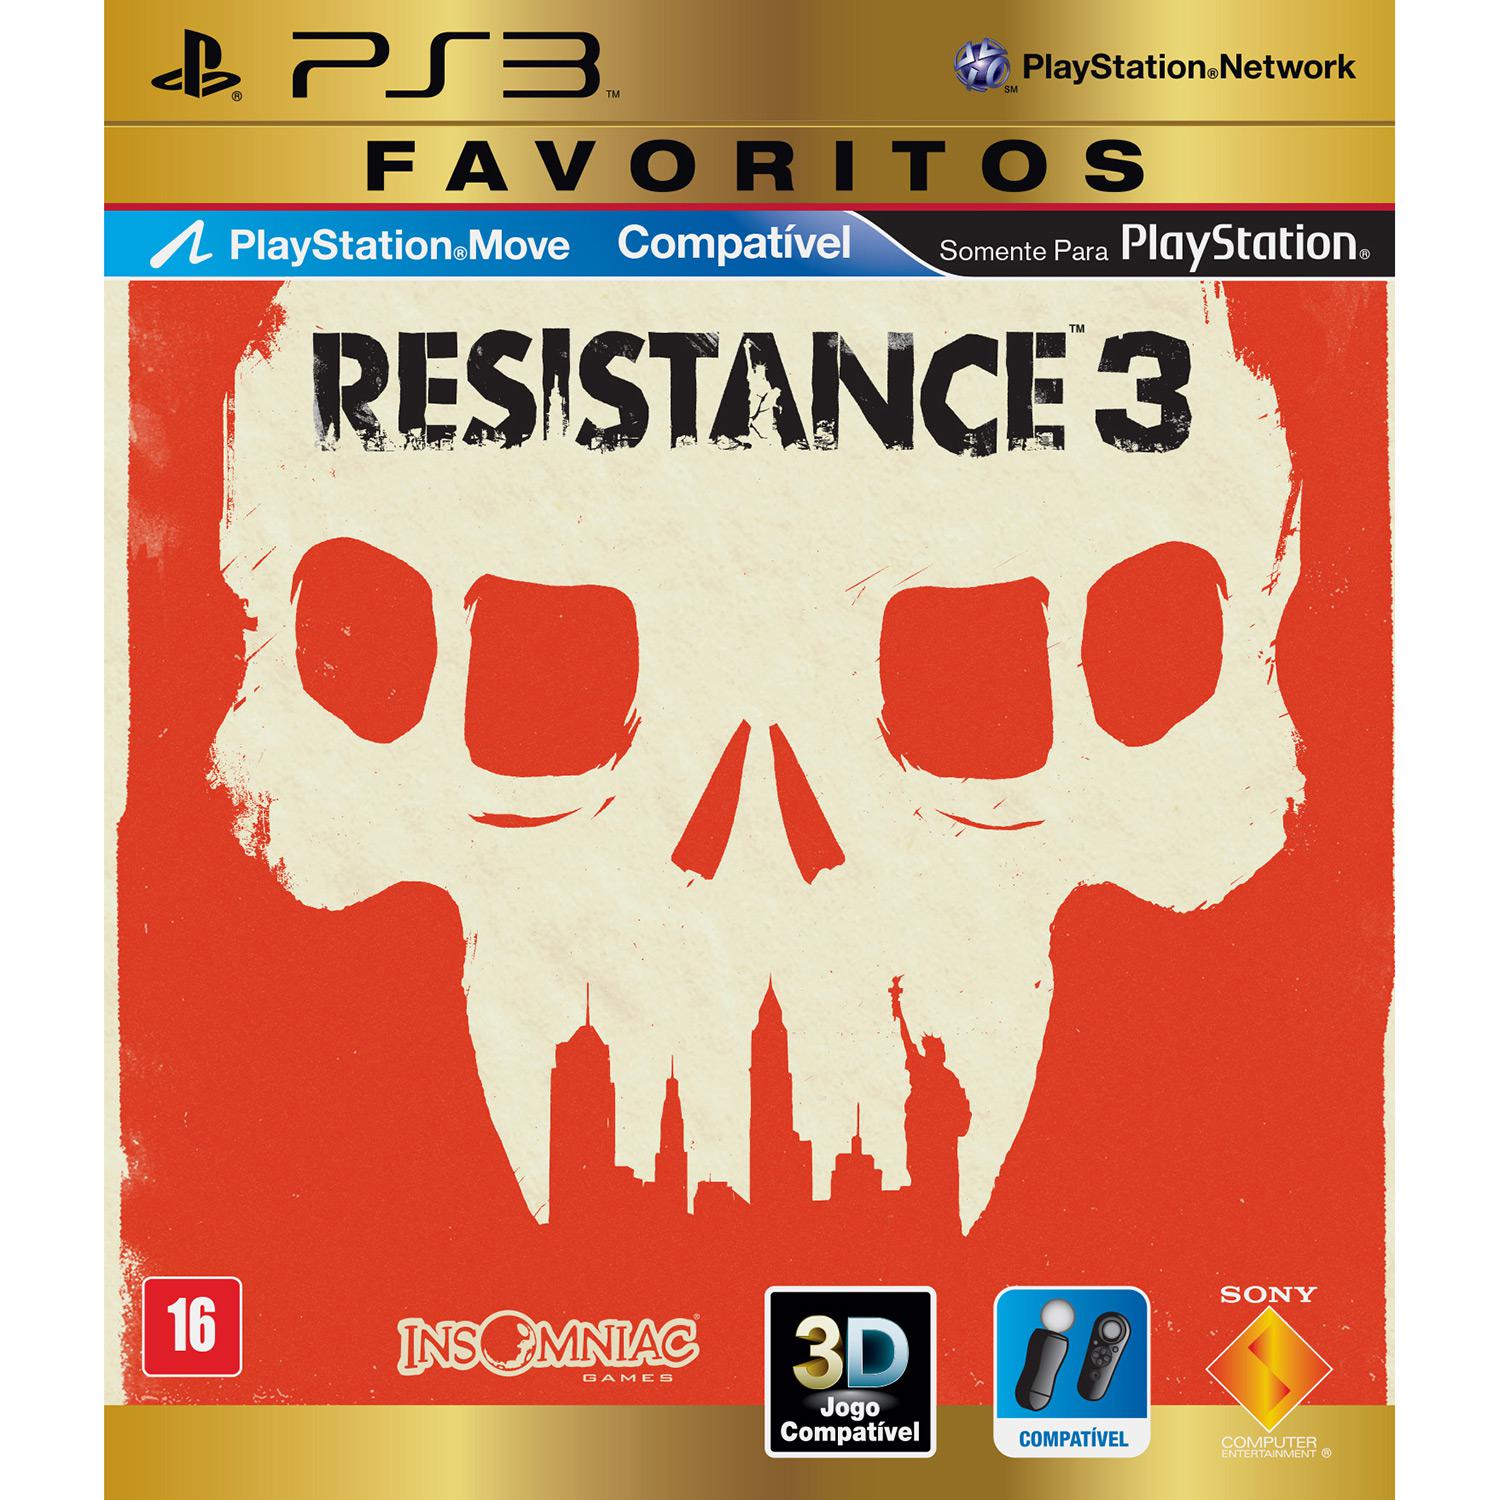 Game Resistance 3 - Favoritos - PS3 é bom? Vale a pena?